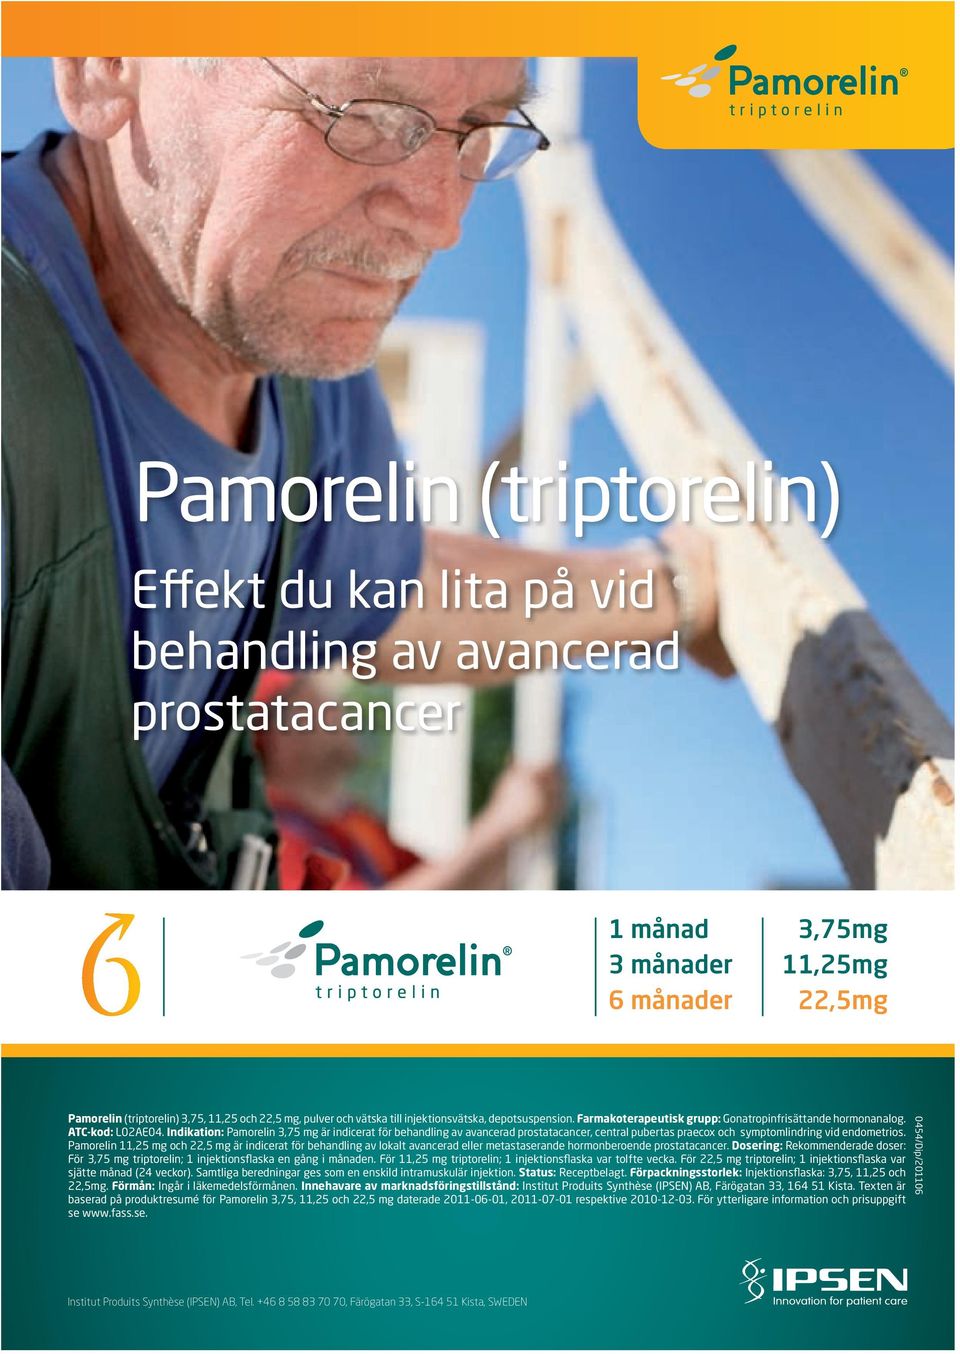 Indikation: Pamorelin 3,75 mg är indicerat för behandling av avancerad prostatacancer, central pubertas praecox och symptomlindring vid endometrios.